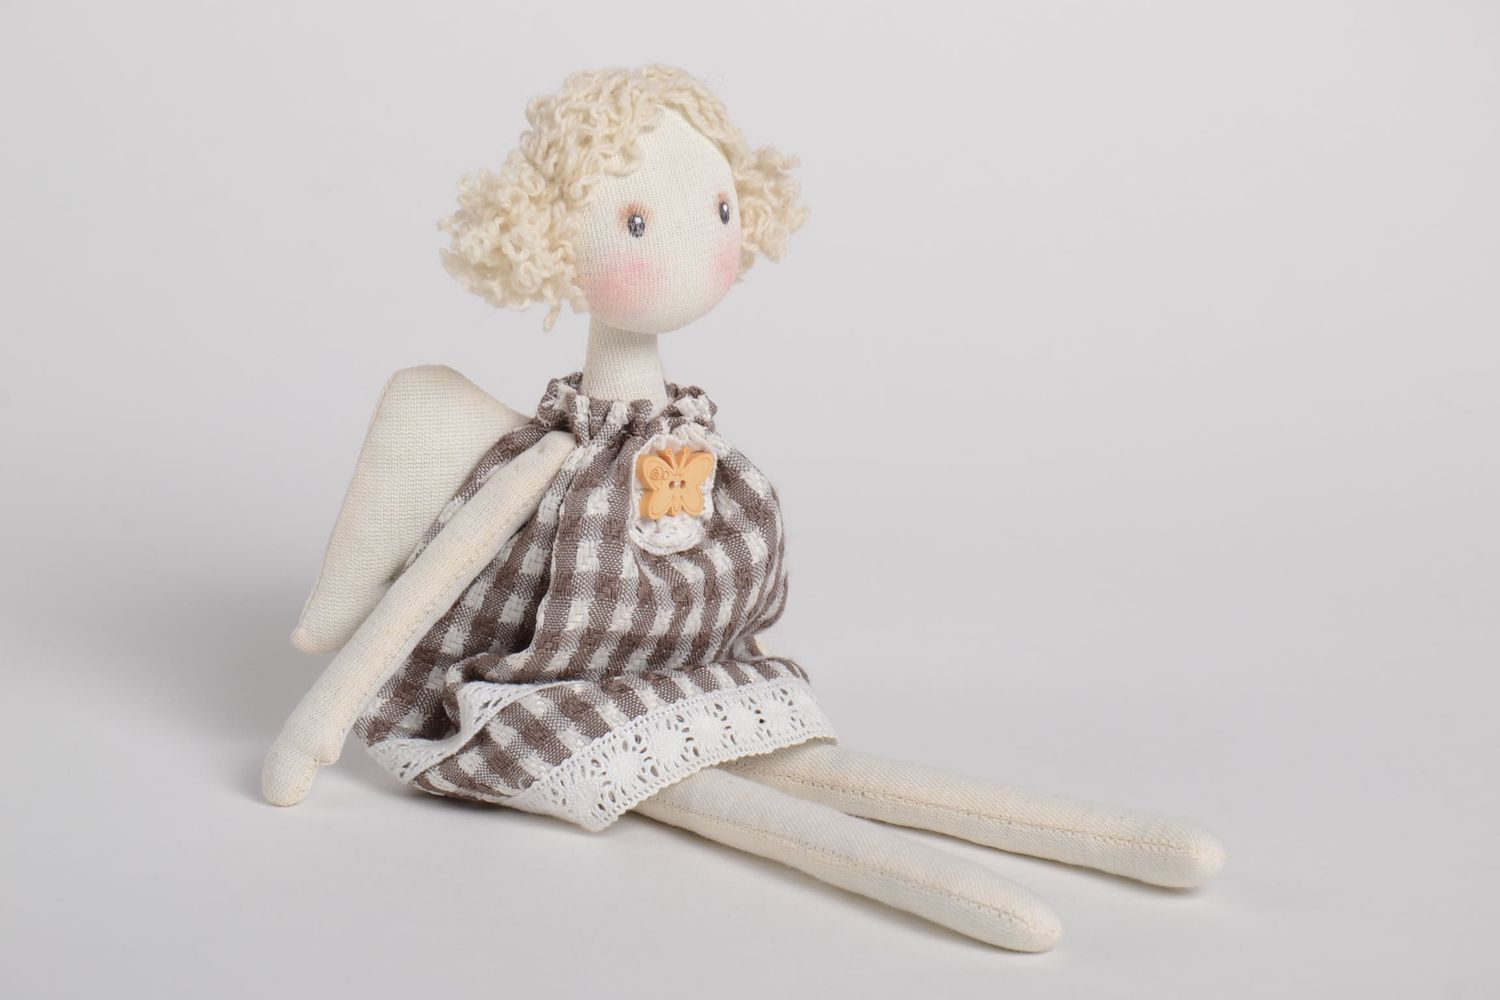 Handmade schöne Puppe Engel im karierten Kleid Designer Puppe Stoff Spielzeug  foto 5